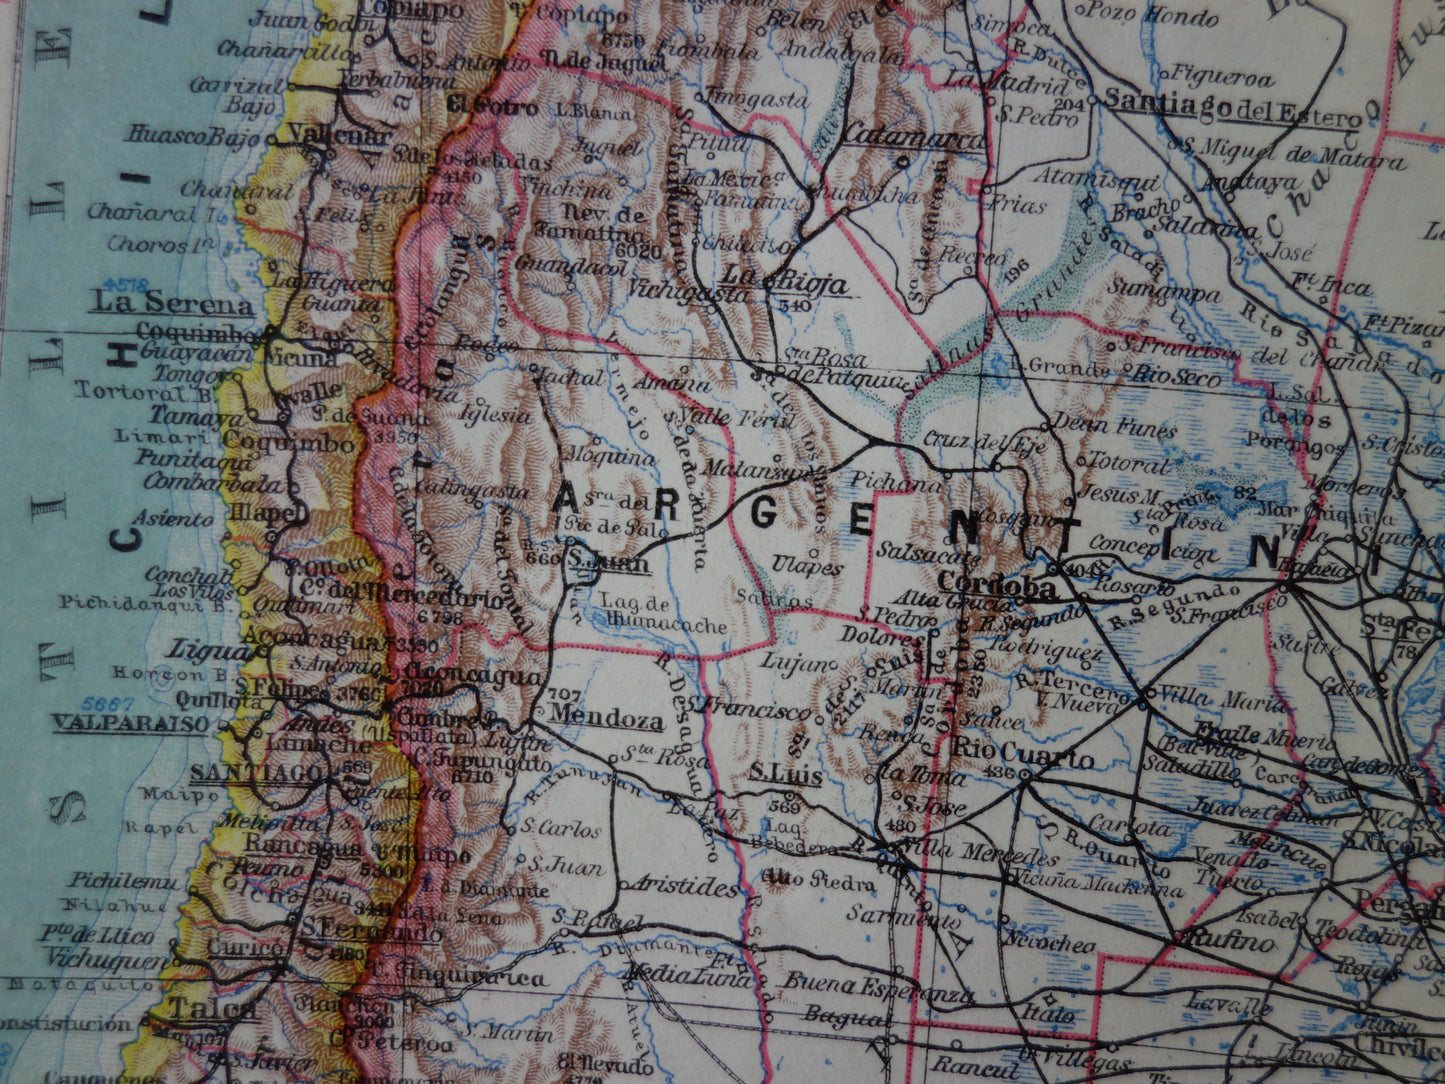 ZUID-AMERIKA oude landkaart van Argentinië Chili Uruguay gedetailleerde vintage kaart uit 1928 Paraguay Bolivia